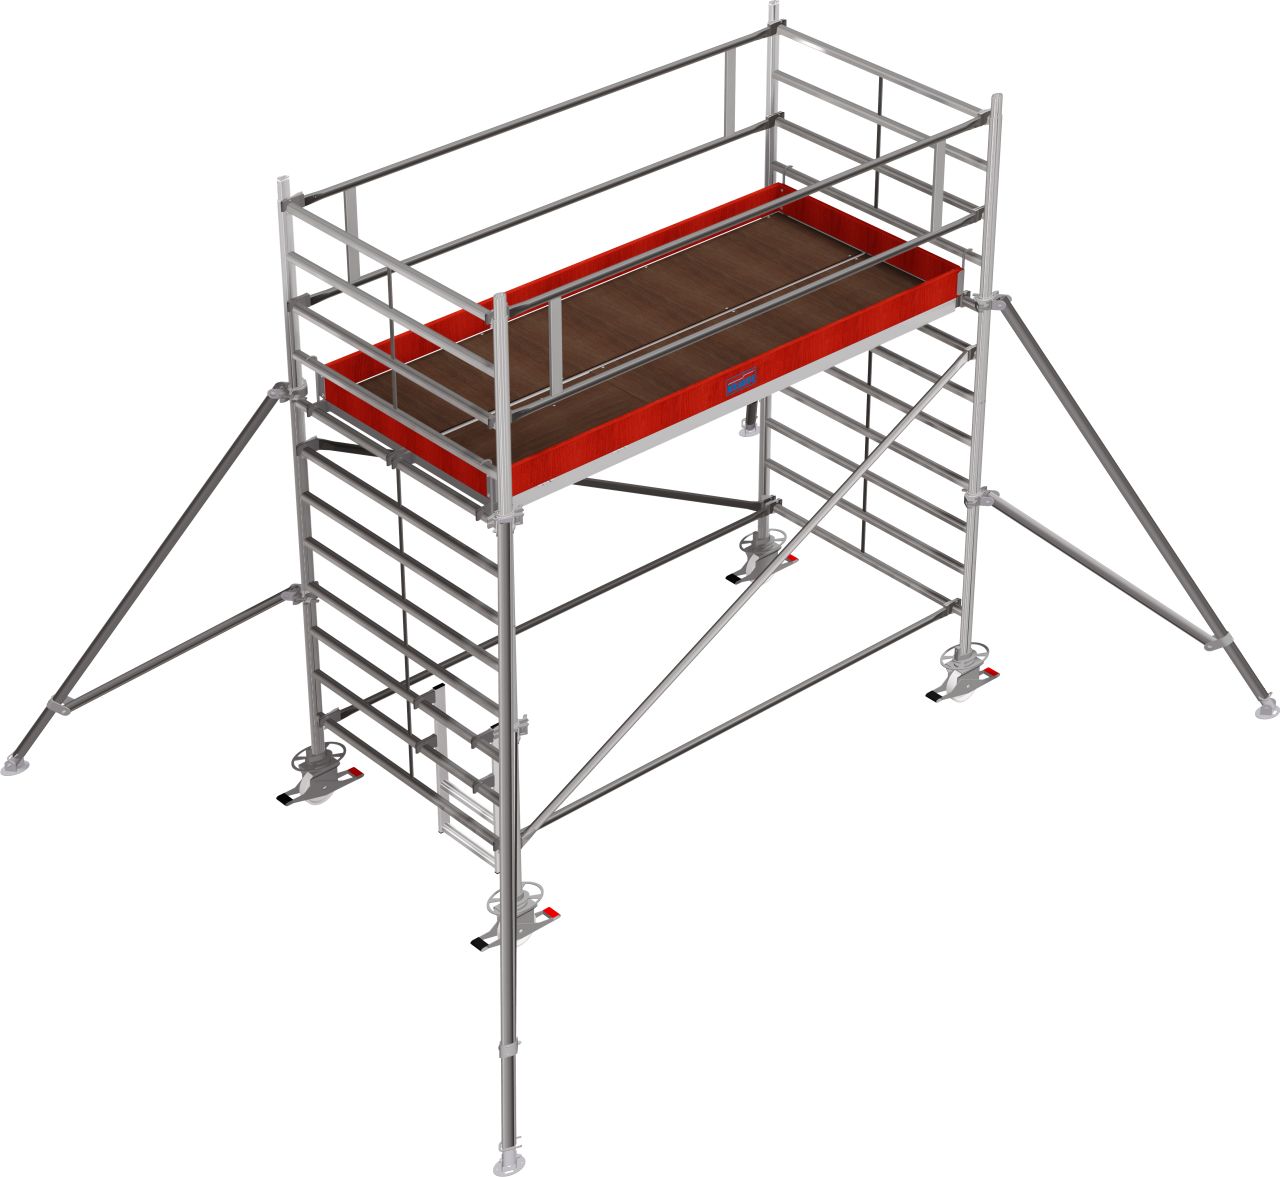 Дополнительное изображение Stabilo 5000 рабочая высота 4,2 м, размер площадки (3x1.5 м)